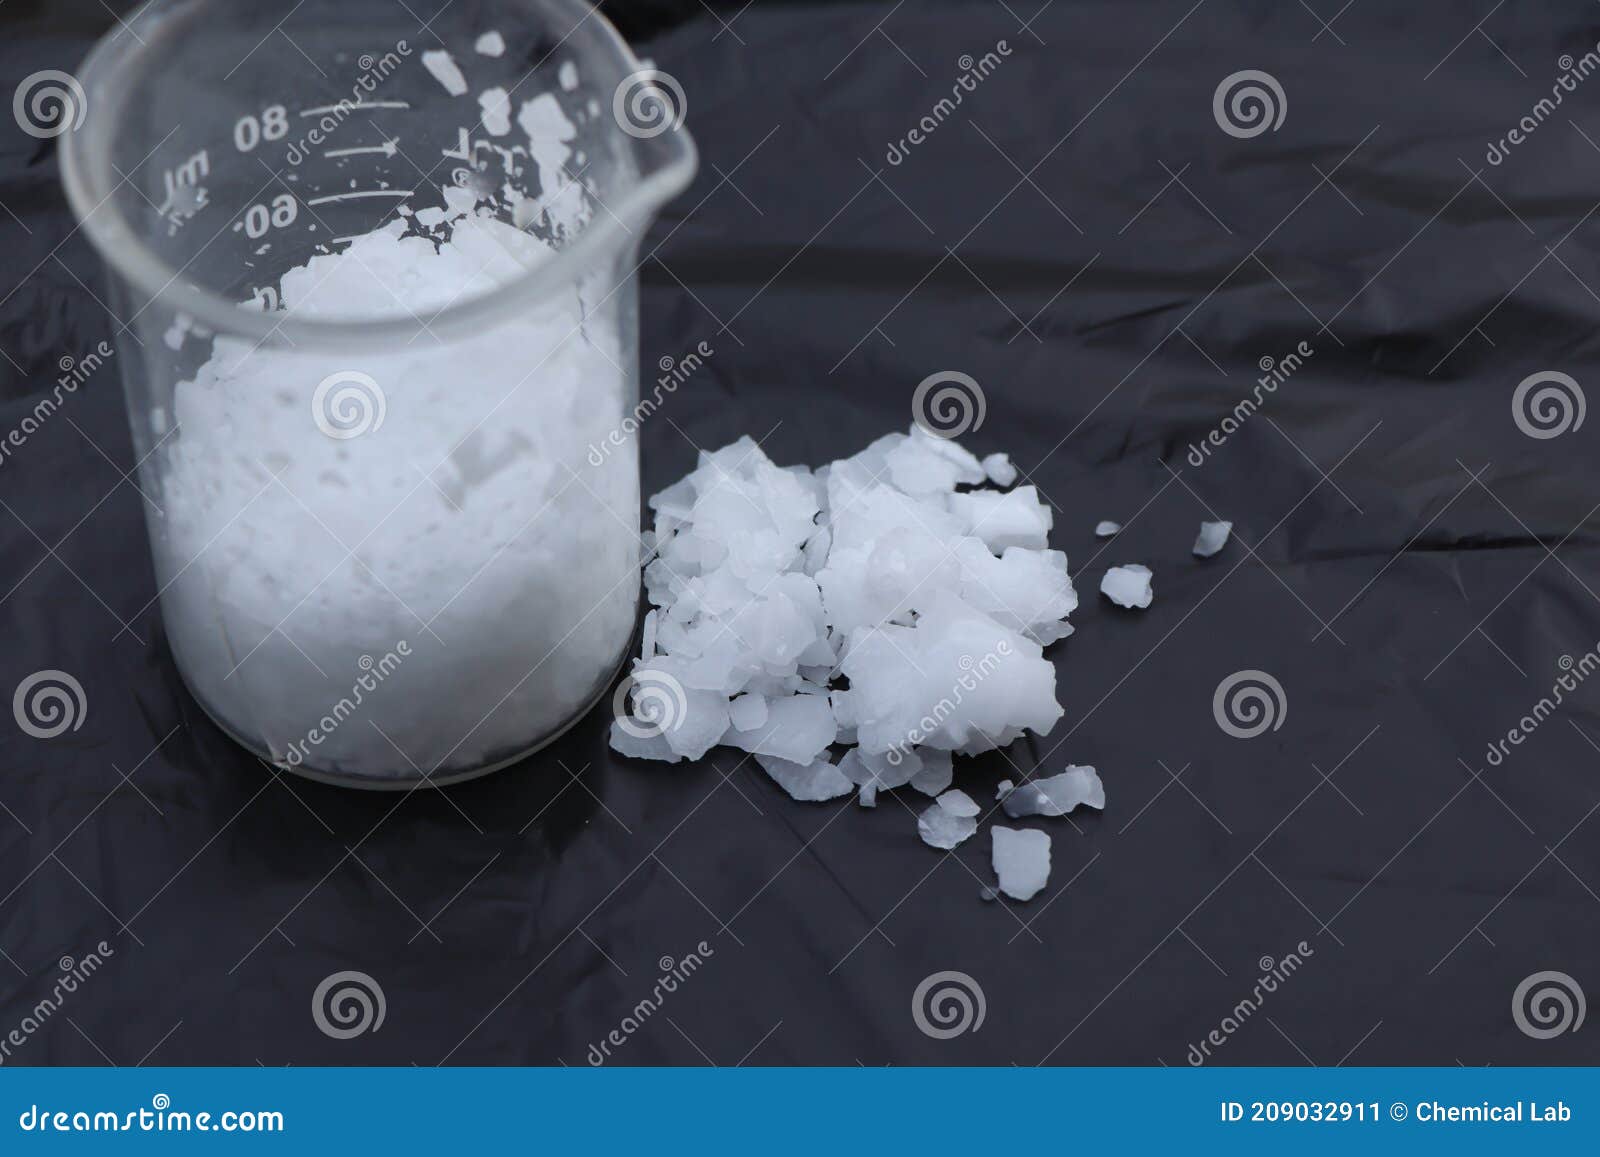 caustic soda flake sodium hydroxide flake